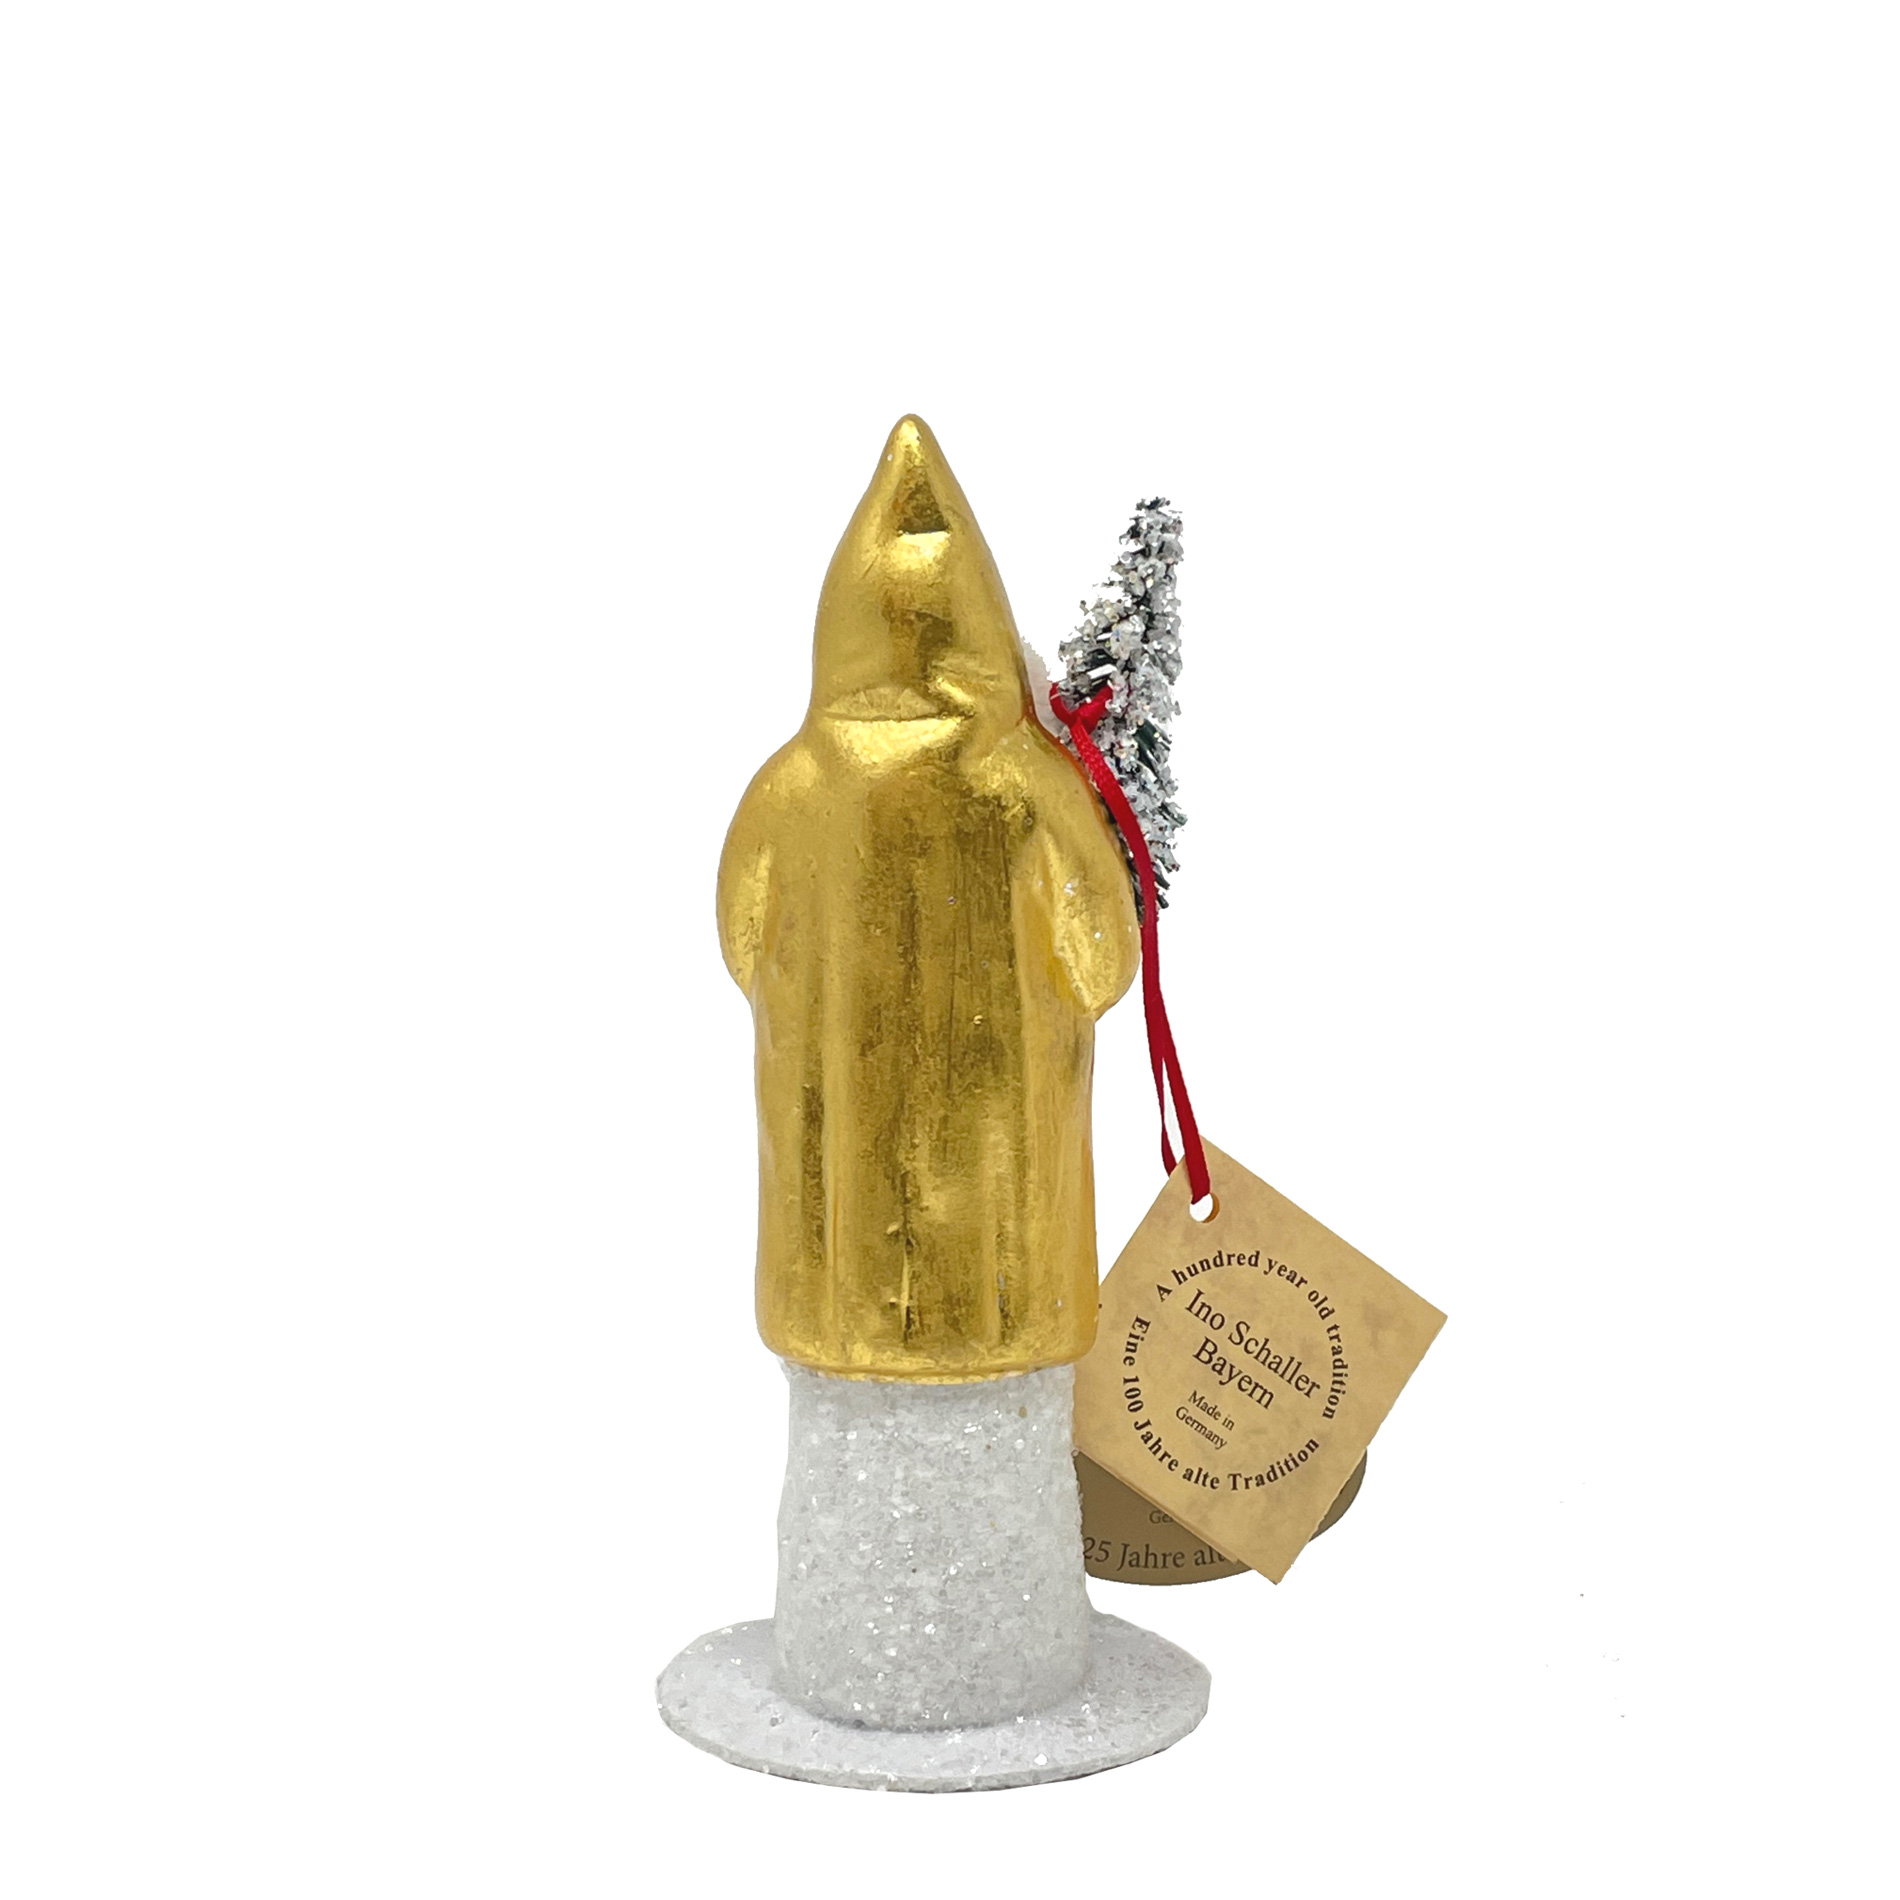 Ino Schaller Santa Nr. 86, Gold, 24 Karat Goldauflage, klein, Weihnachtsmann Nostalgie von Ino Schaller, ca. 15 cm 